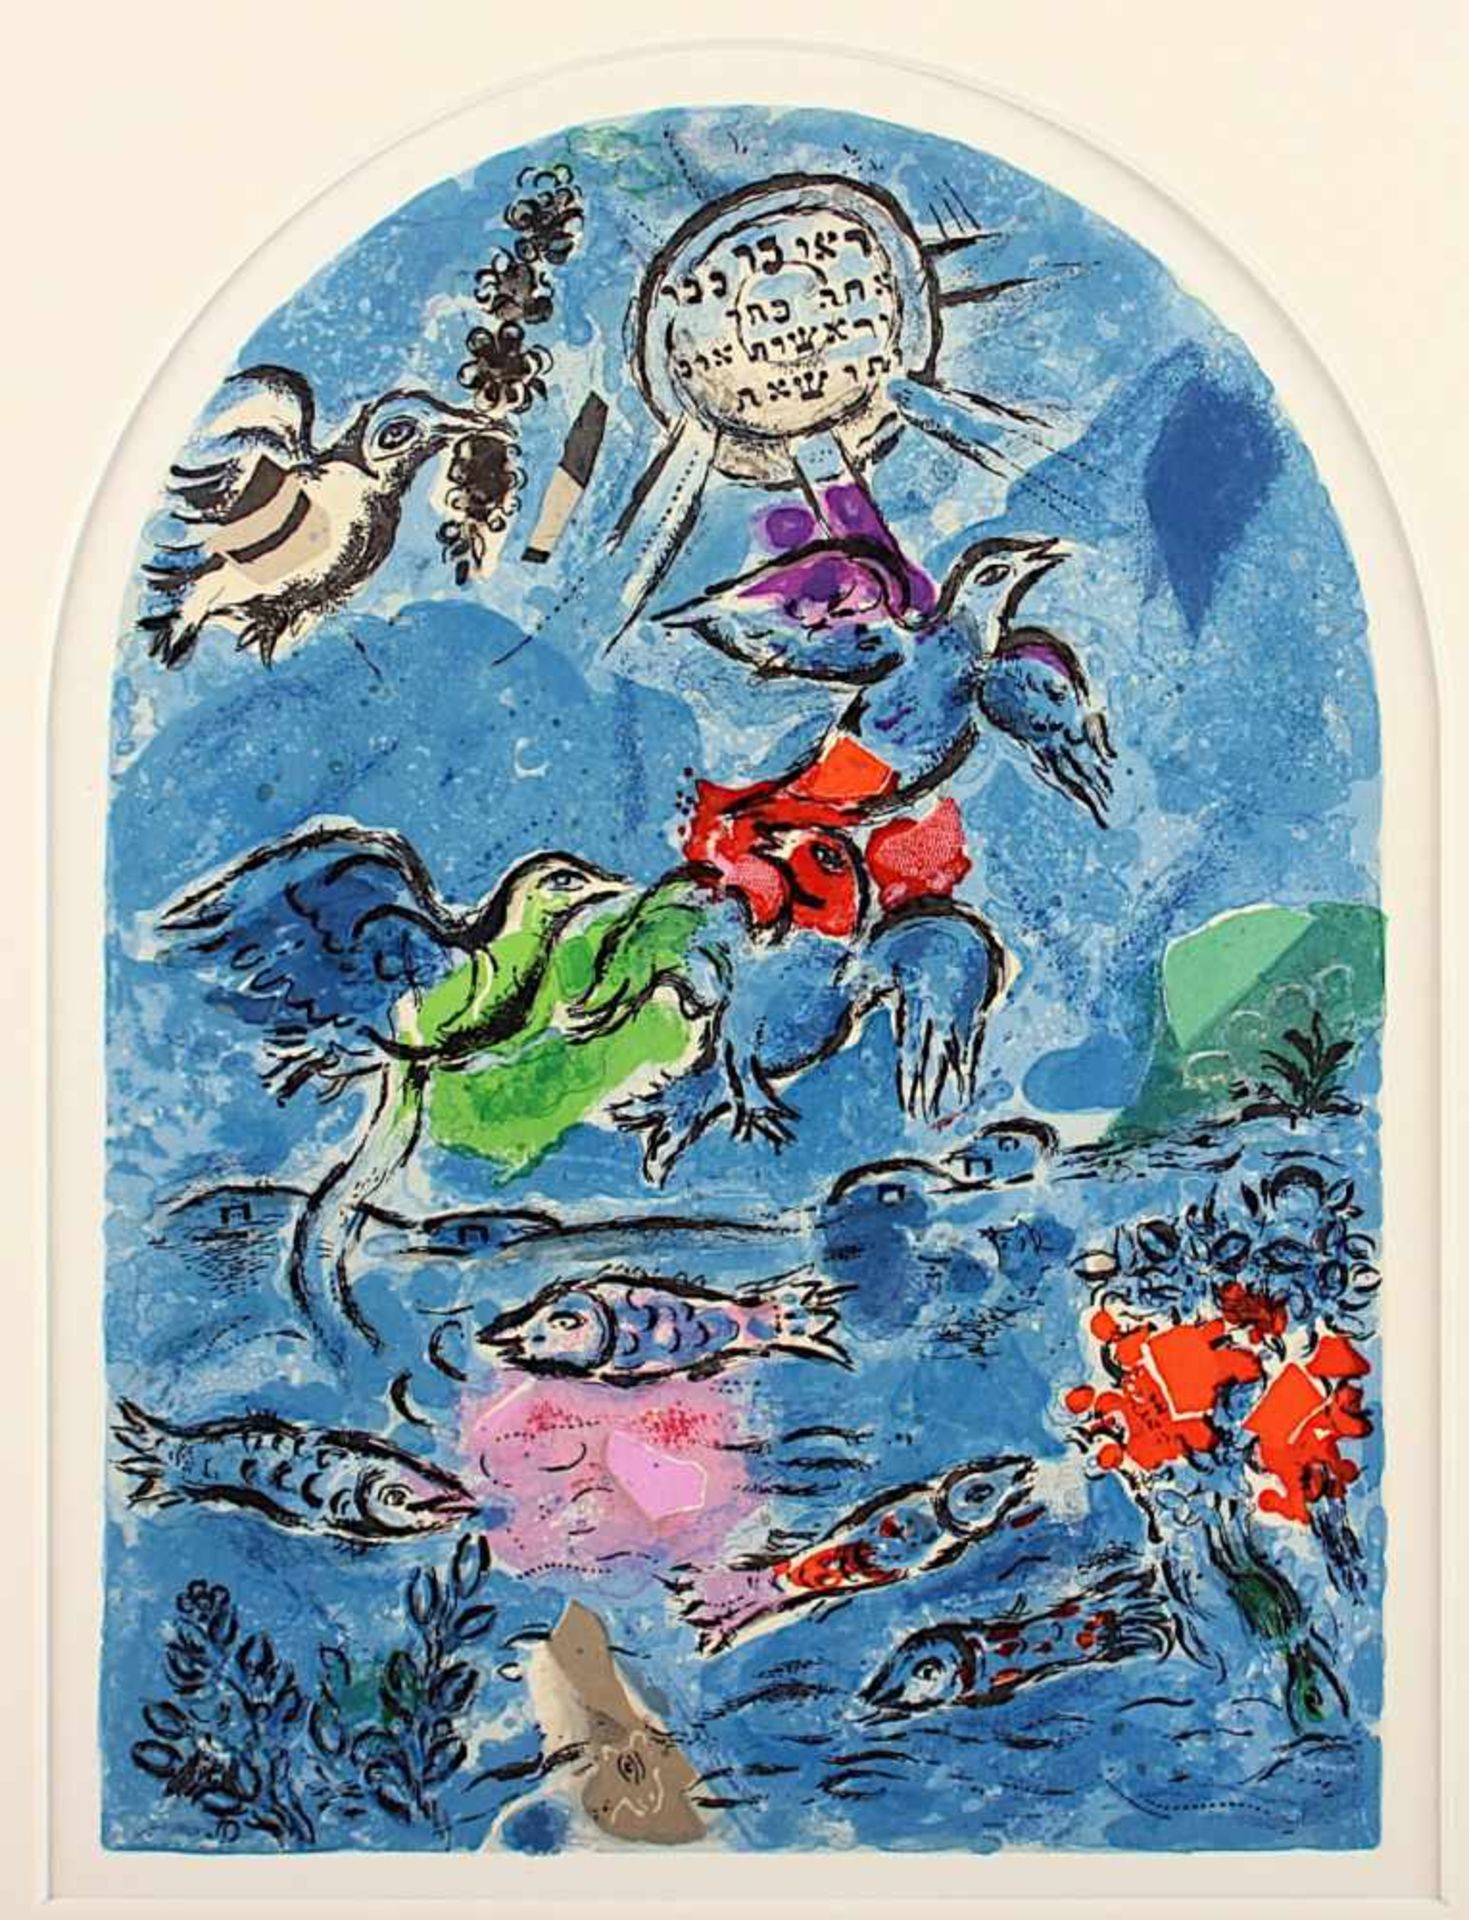 CHAGALL, Marc, "Glasfenster", blau, Farblithografie, 29,5 x 21,5, Mourlot, A.Sauret, Paris, 1962,